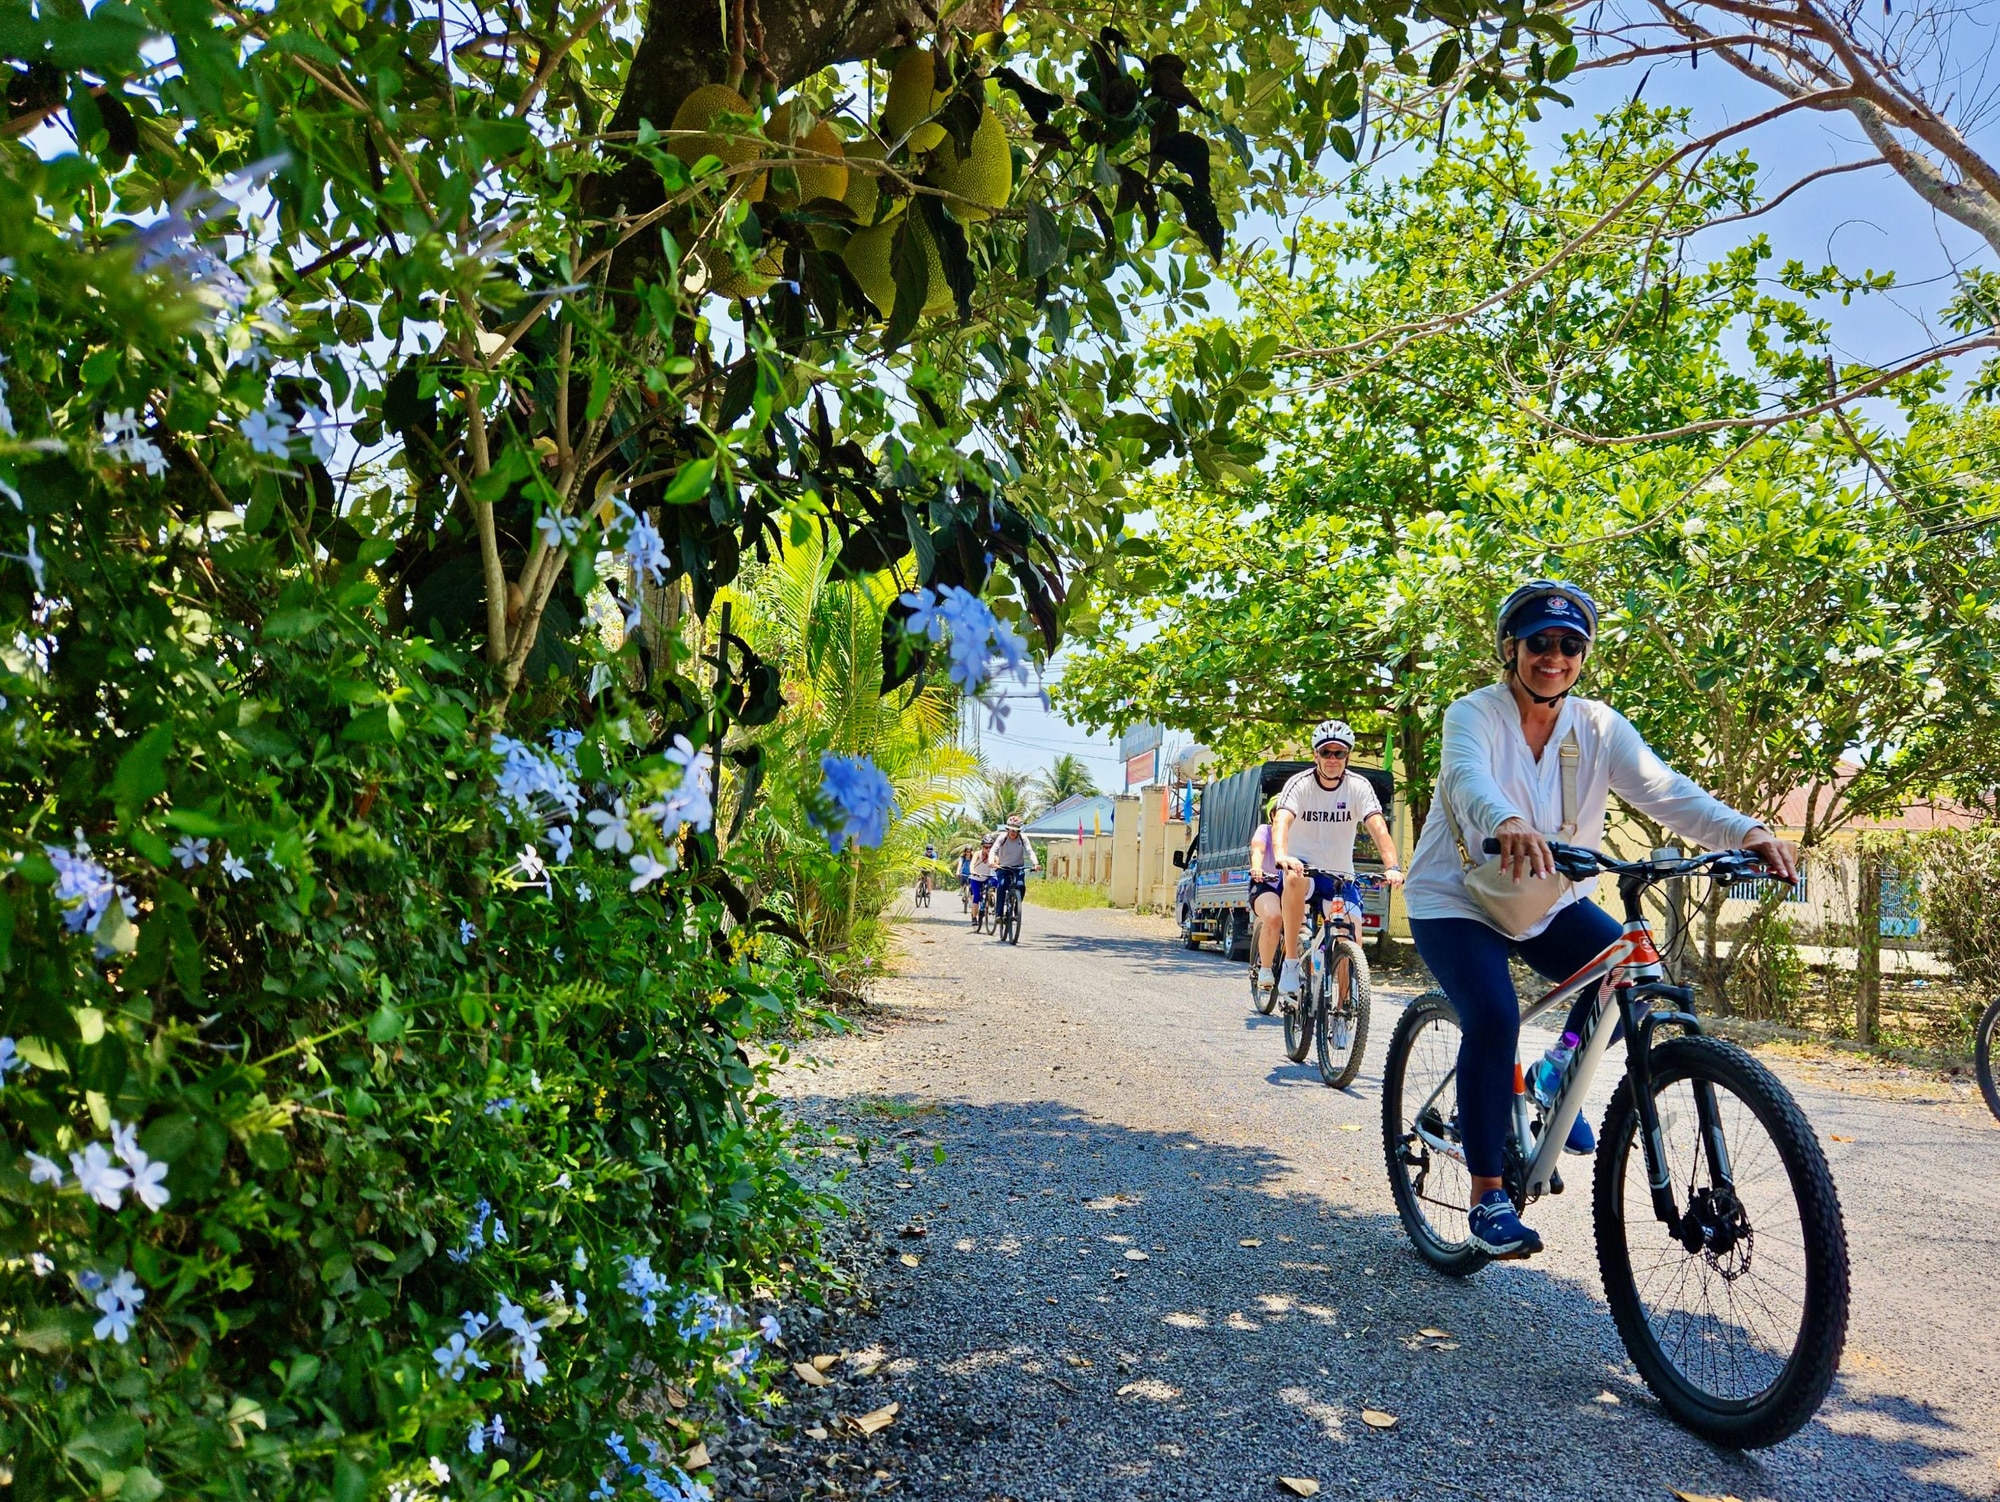 Du khách đạp xe quanh làng quê Diên Khánh - Ảnh: MINH CHIẾN